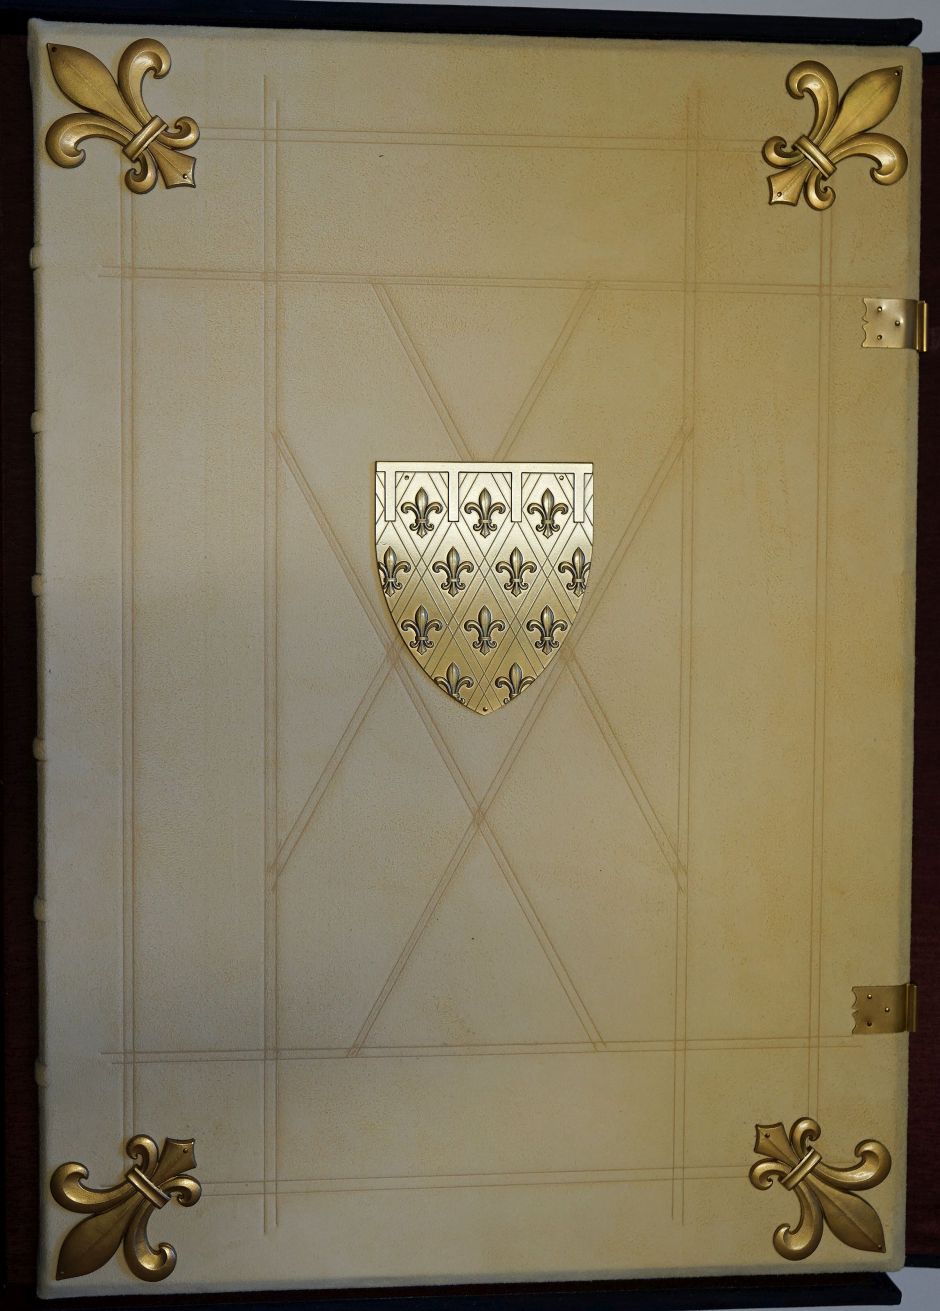 Lot 1422, Auction  115, Lobgedicht auf König Robert von Anjou, Das, Cod. Ser. N. 2639